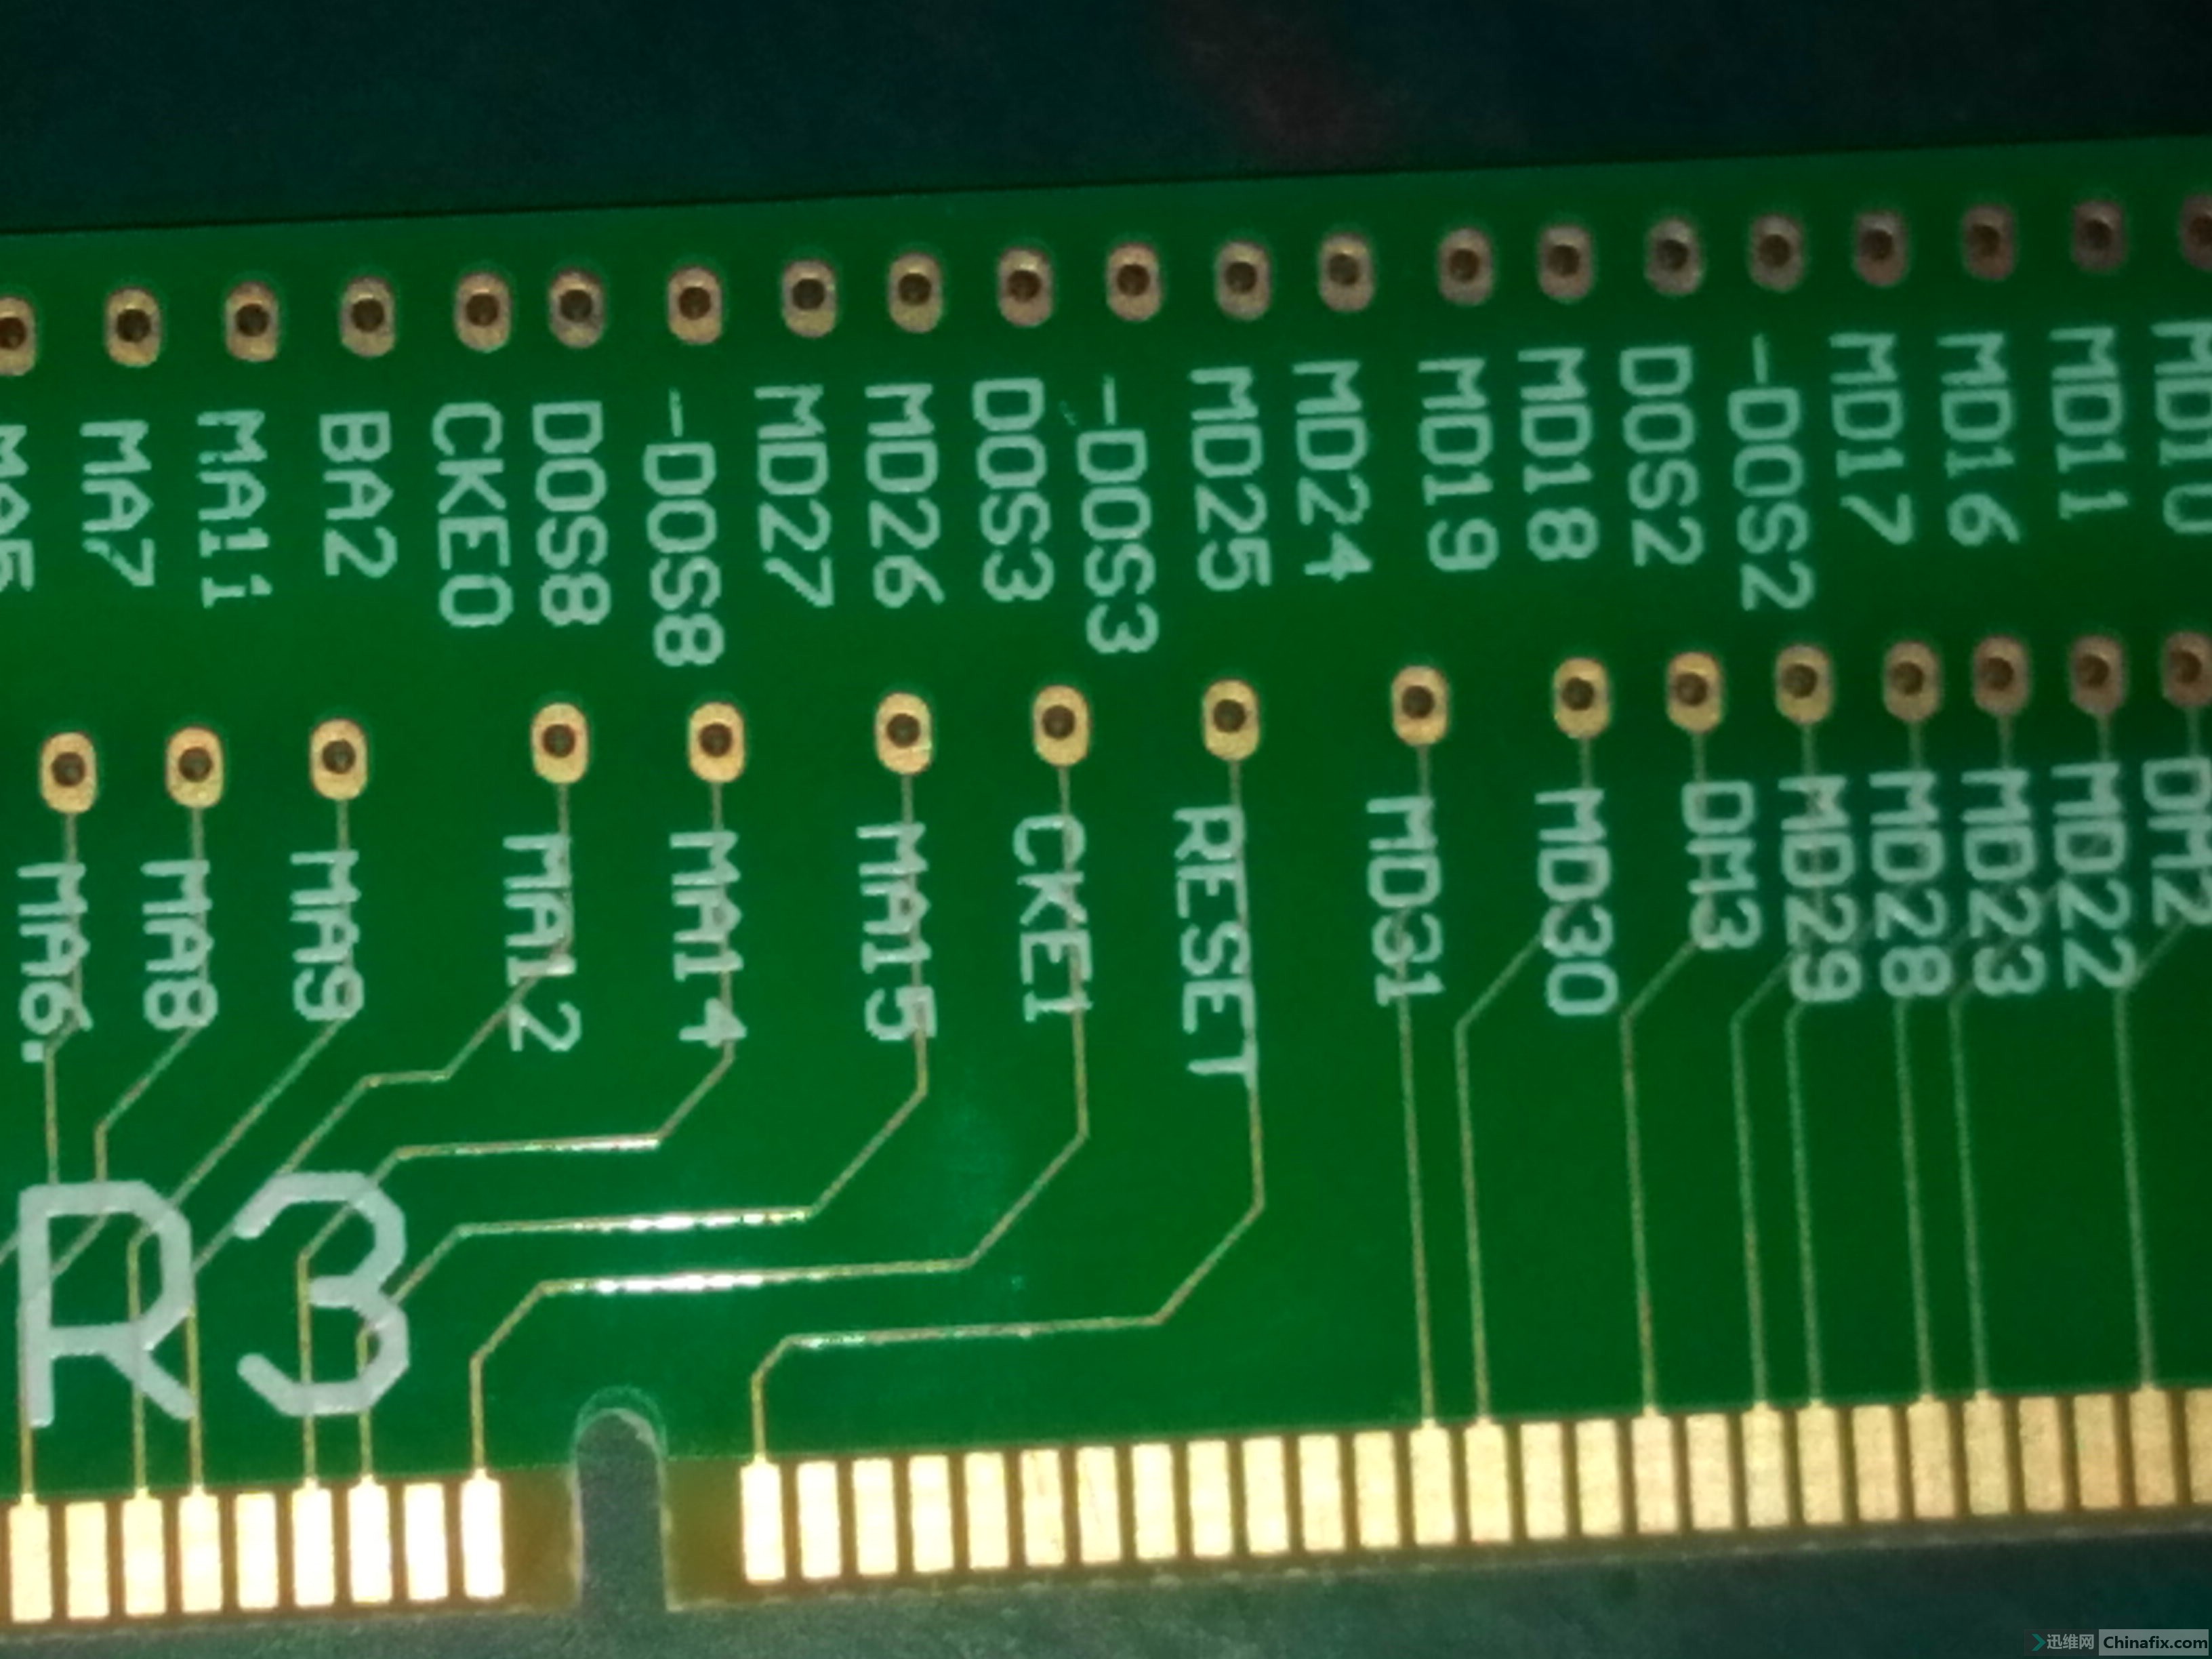 首次目睹 DDR3 内存插槽实物图，感受电脑关键部件的魅力  第1张